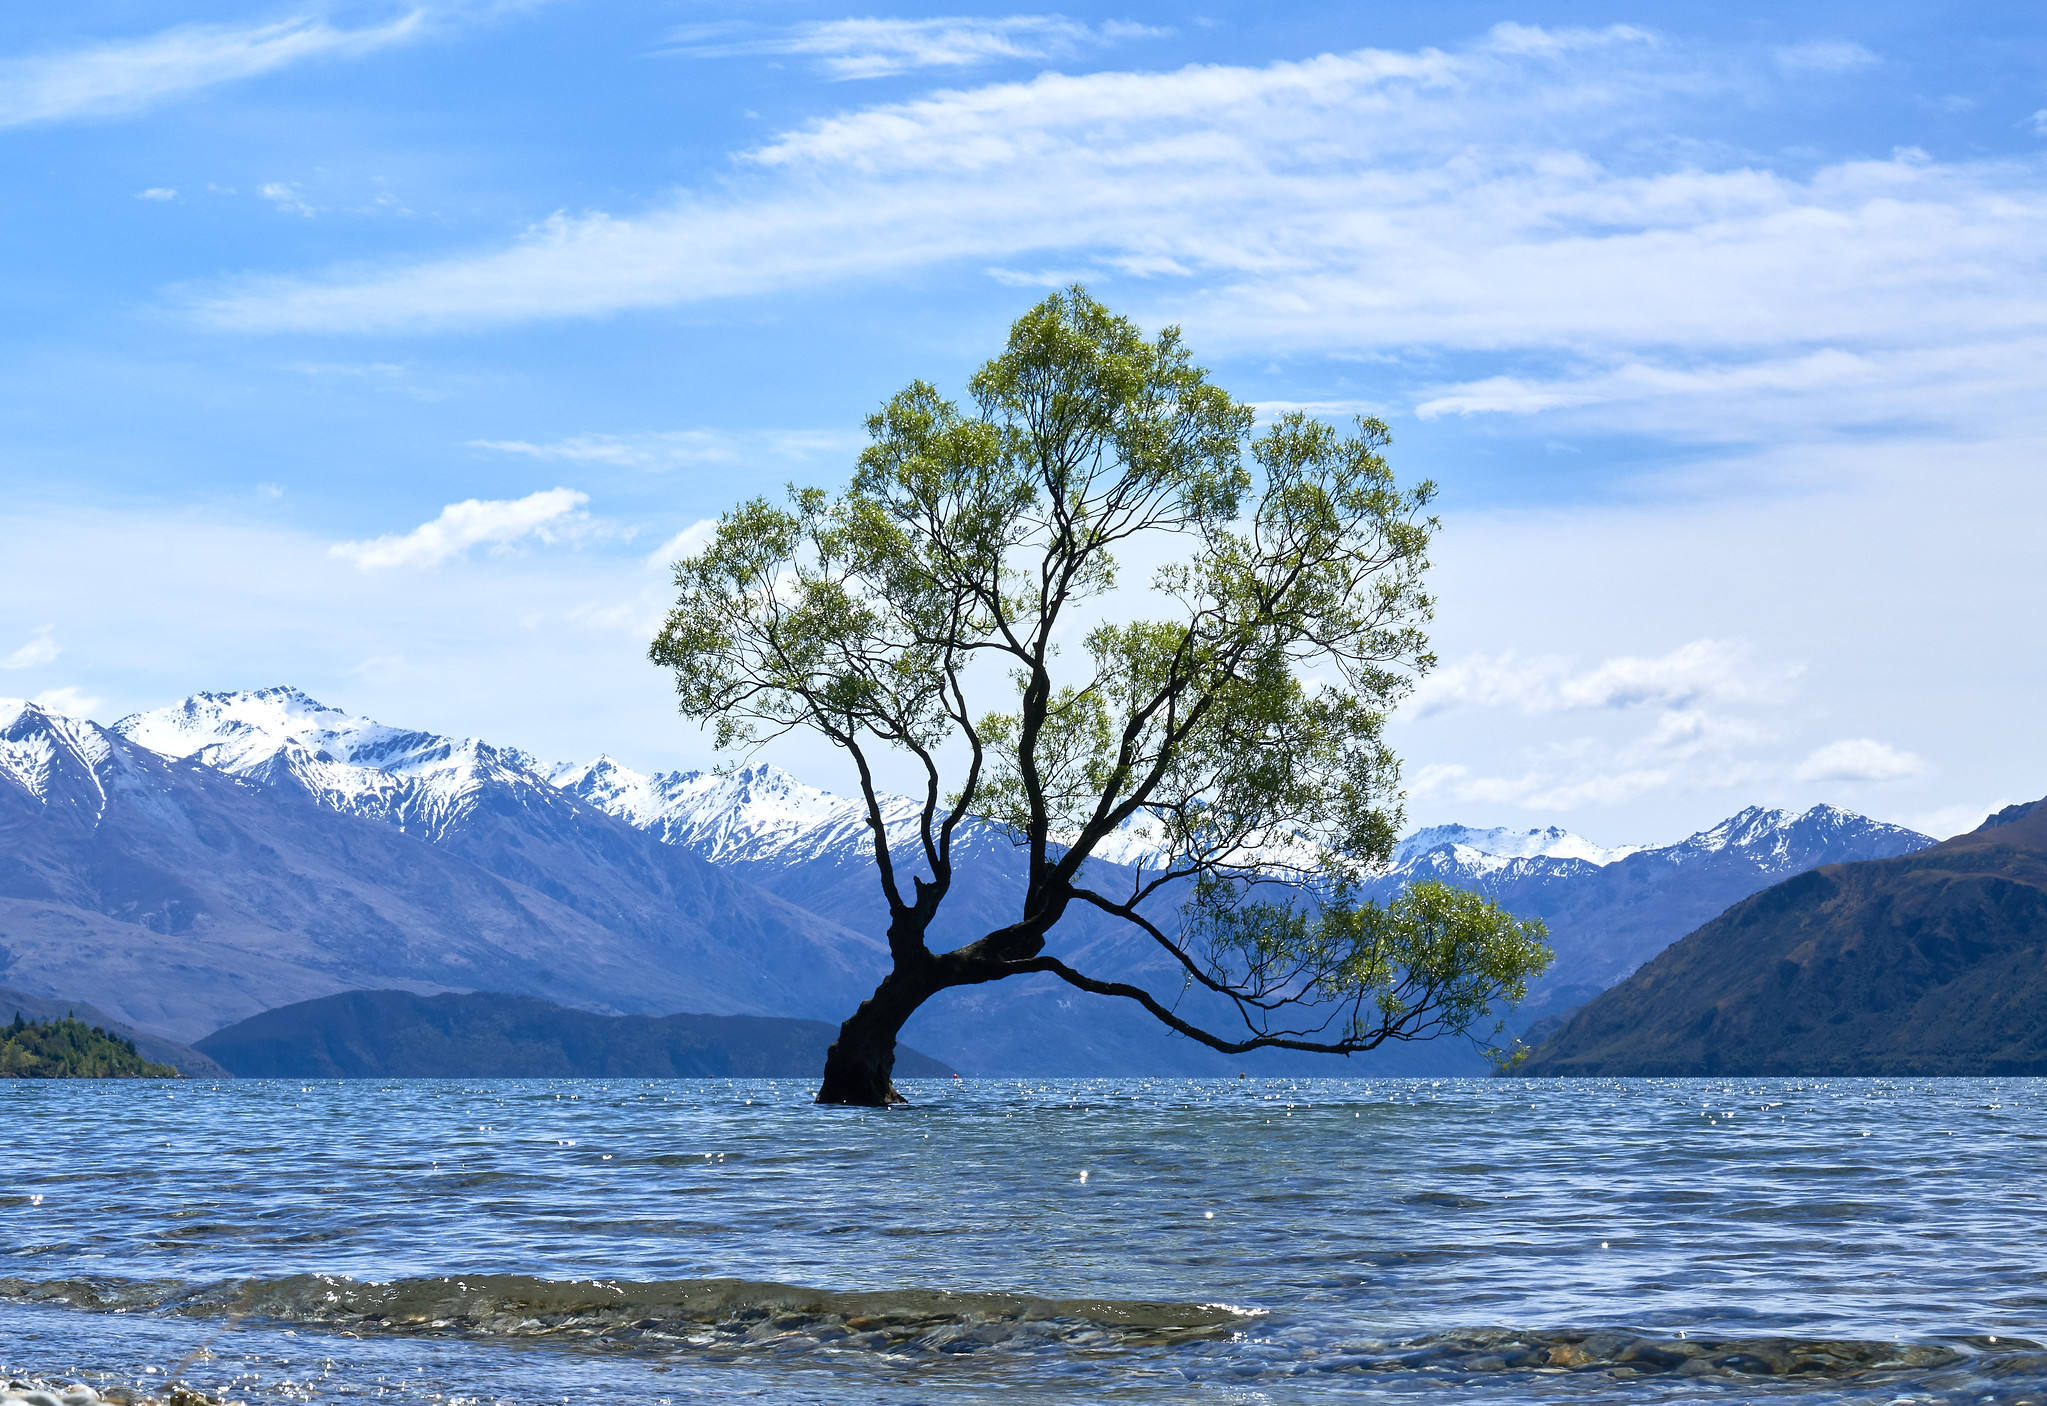 新西兰南岛瓦纳卡湖30 年最低水位,孤独树已被陆地环绕